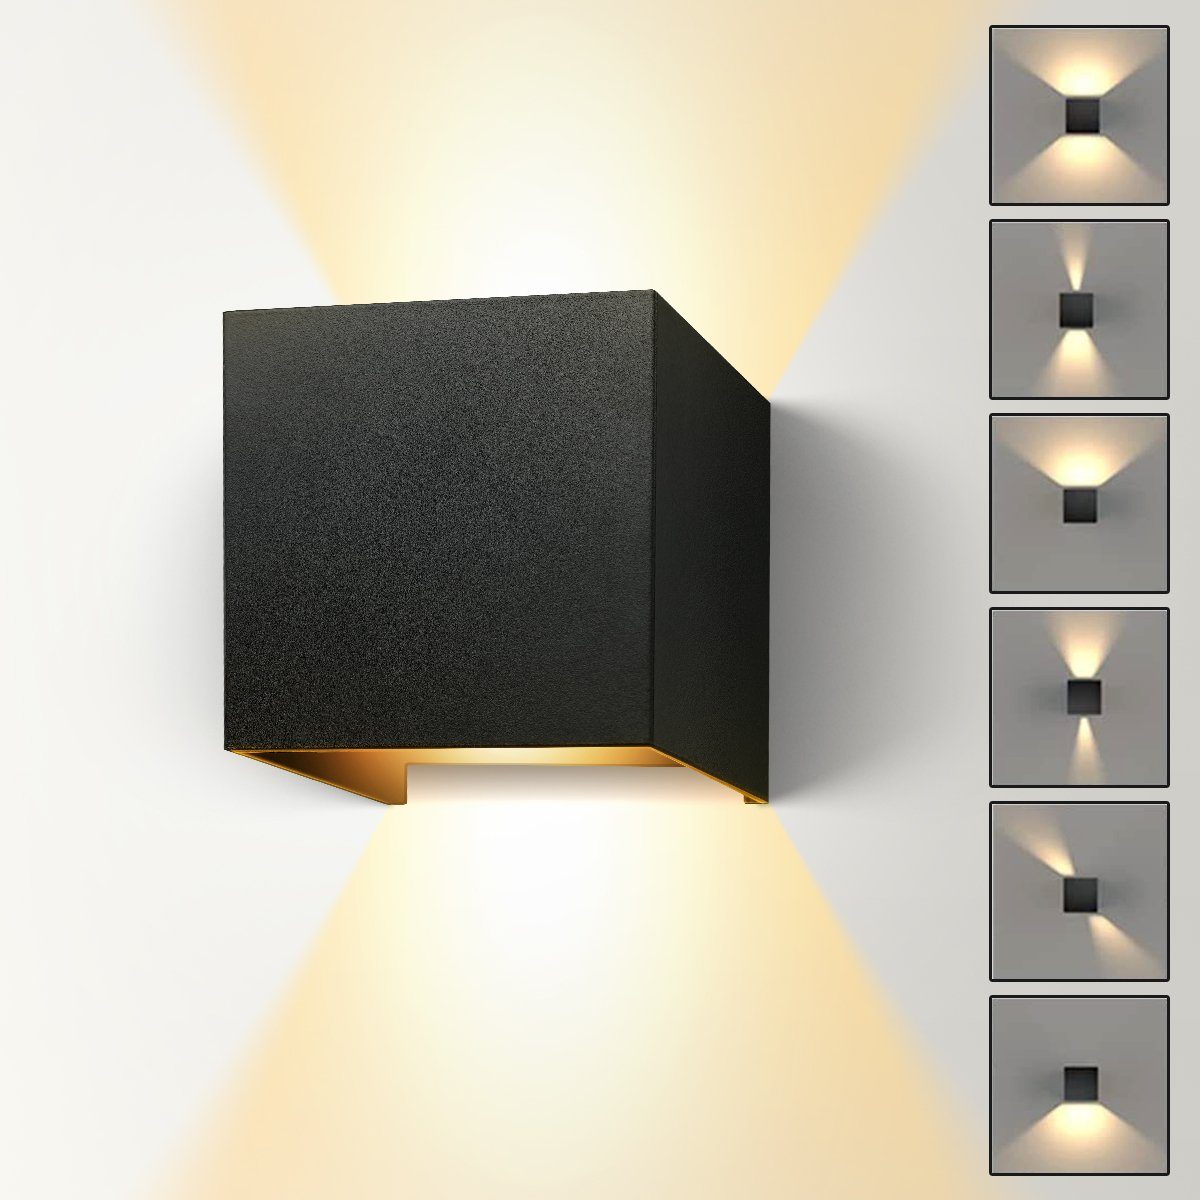 7Magic Wandleuchte Innen/Außen, 12W LED Wandlampe, für Schlafzimmer Wohnzimmer Flure Badezimmer Außenbereiche